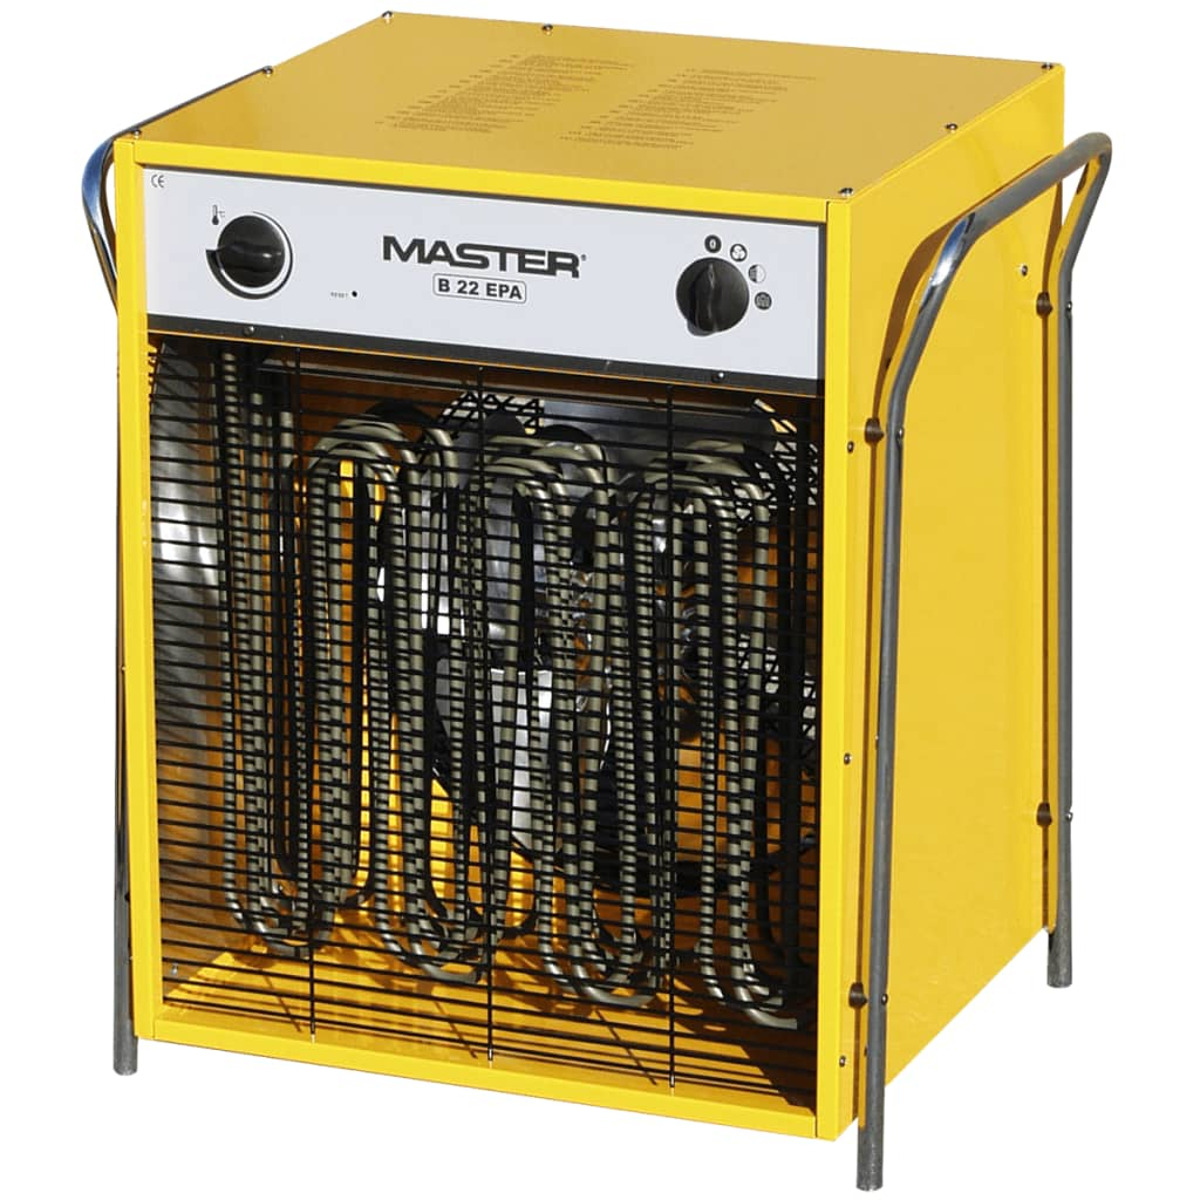 Heizstrahler (11000 402969 Watt) MASTER